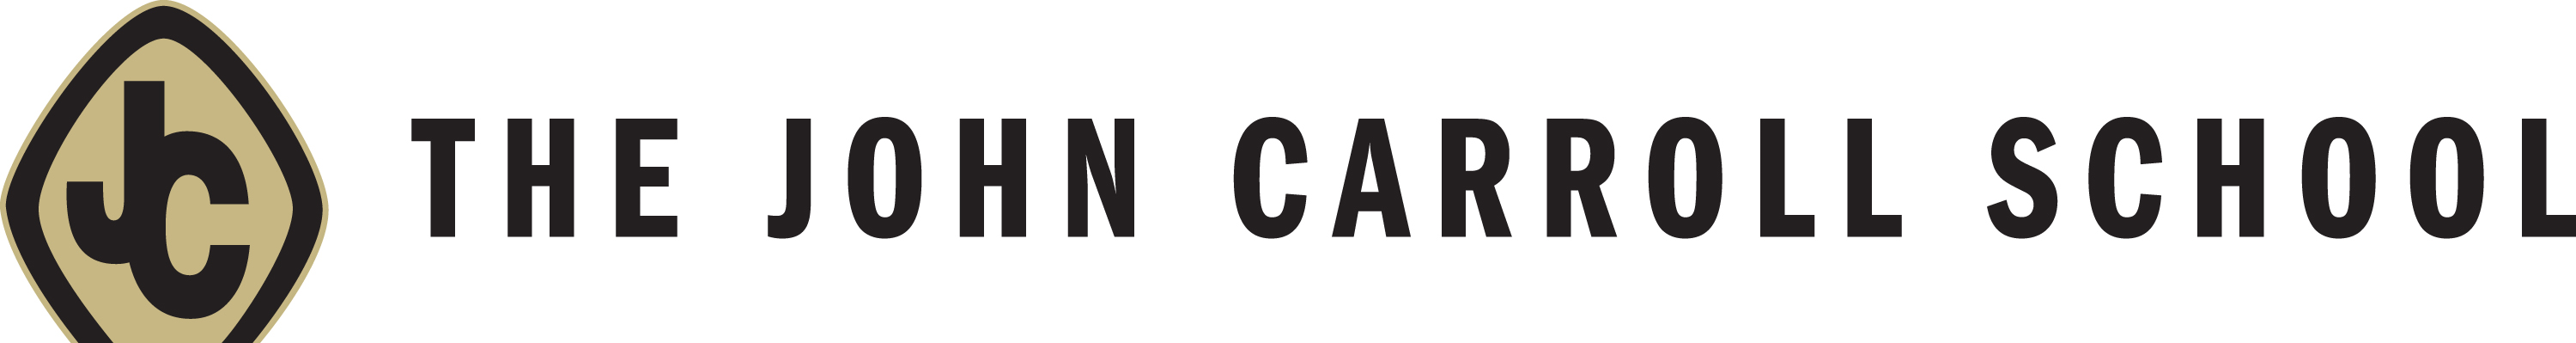 The John Carroll School Company Logo